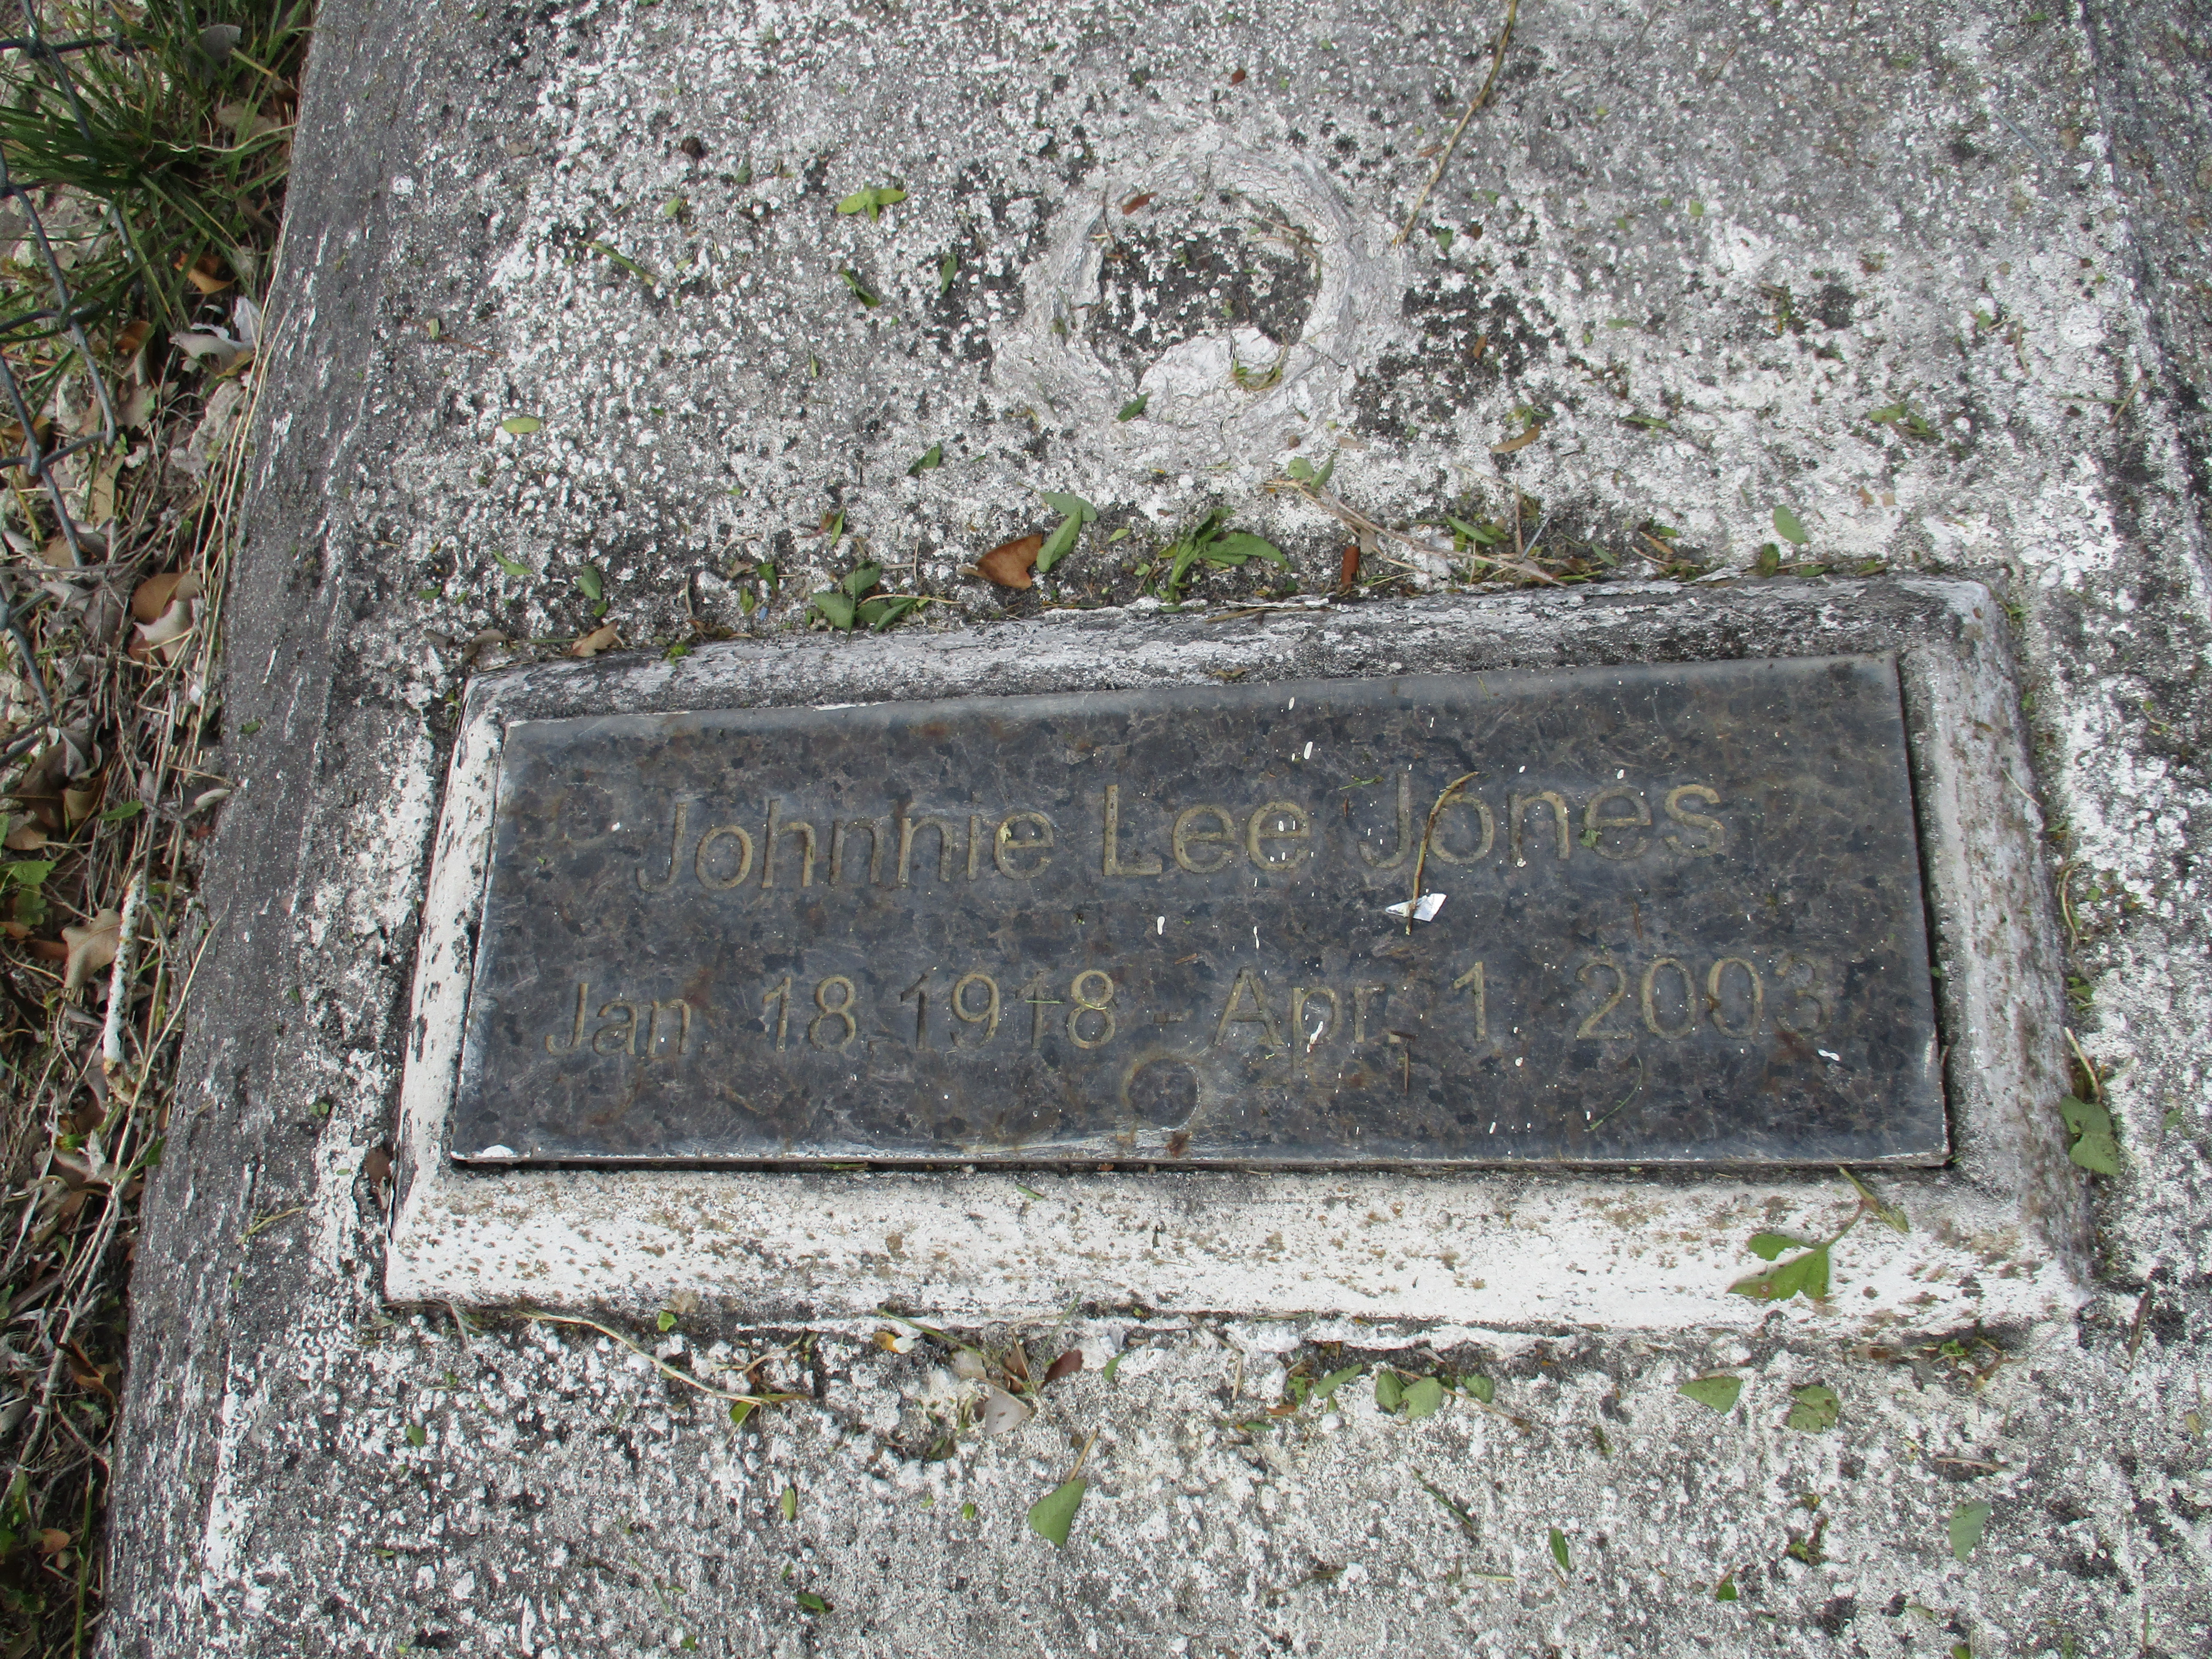 Johnnie Lee Jones